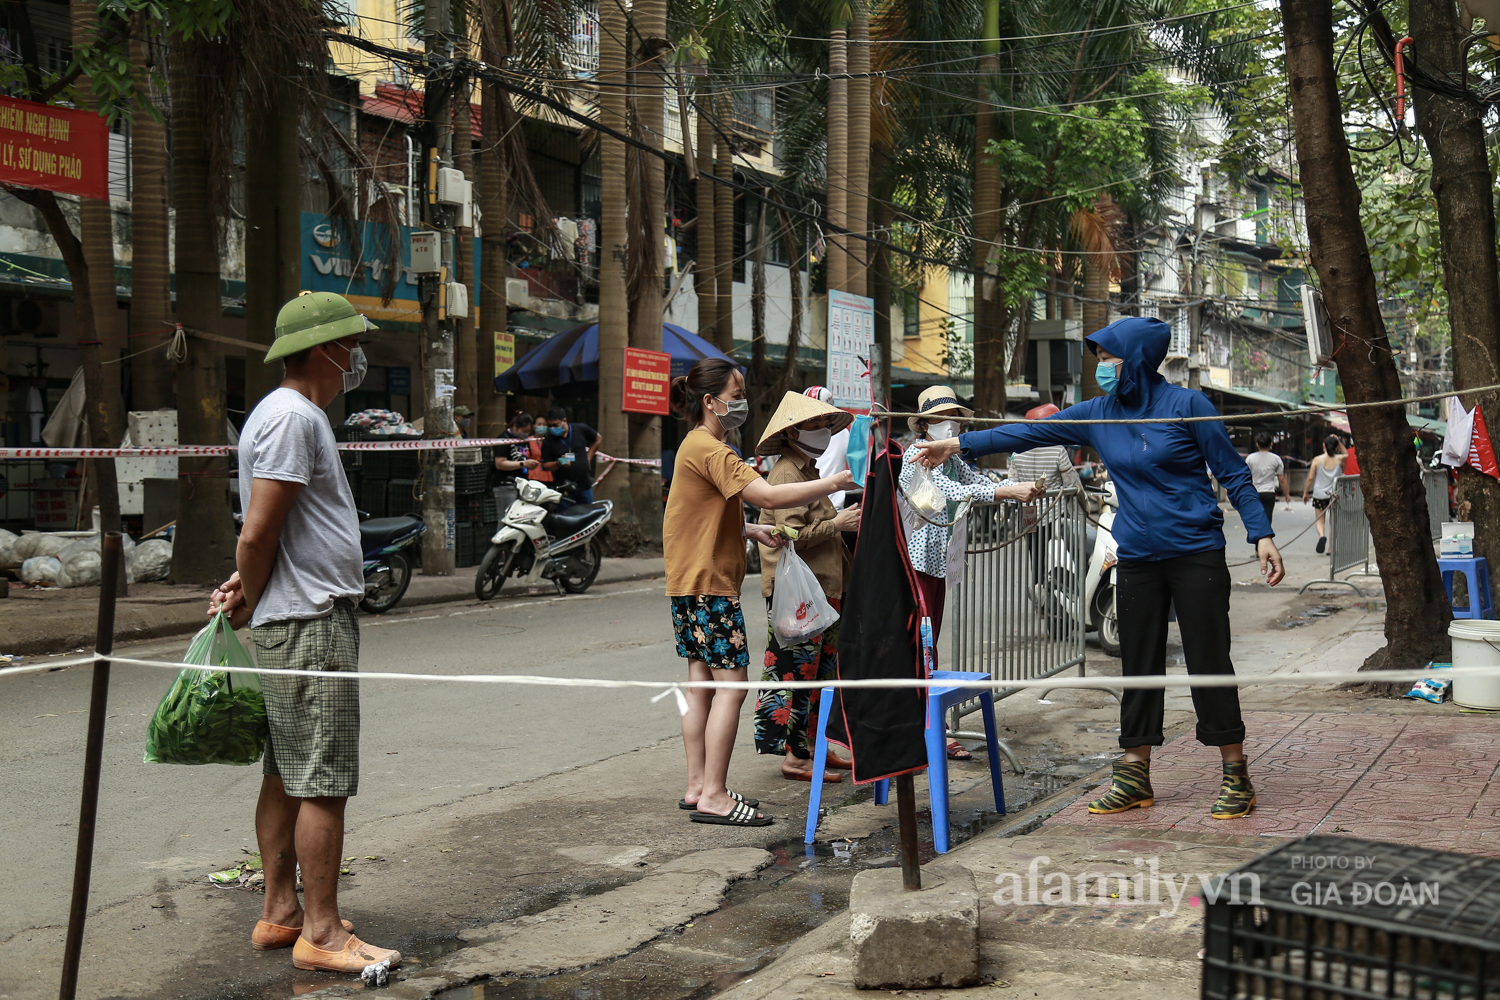 Chung tay phòng chống dịch COVID-19, một khu chợ ở Hà Nội người dân bỏ tiền vào xô rồi lấy đồ ở chậu - Ảnh 9.